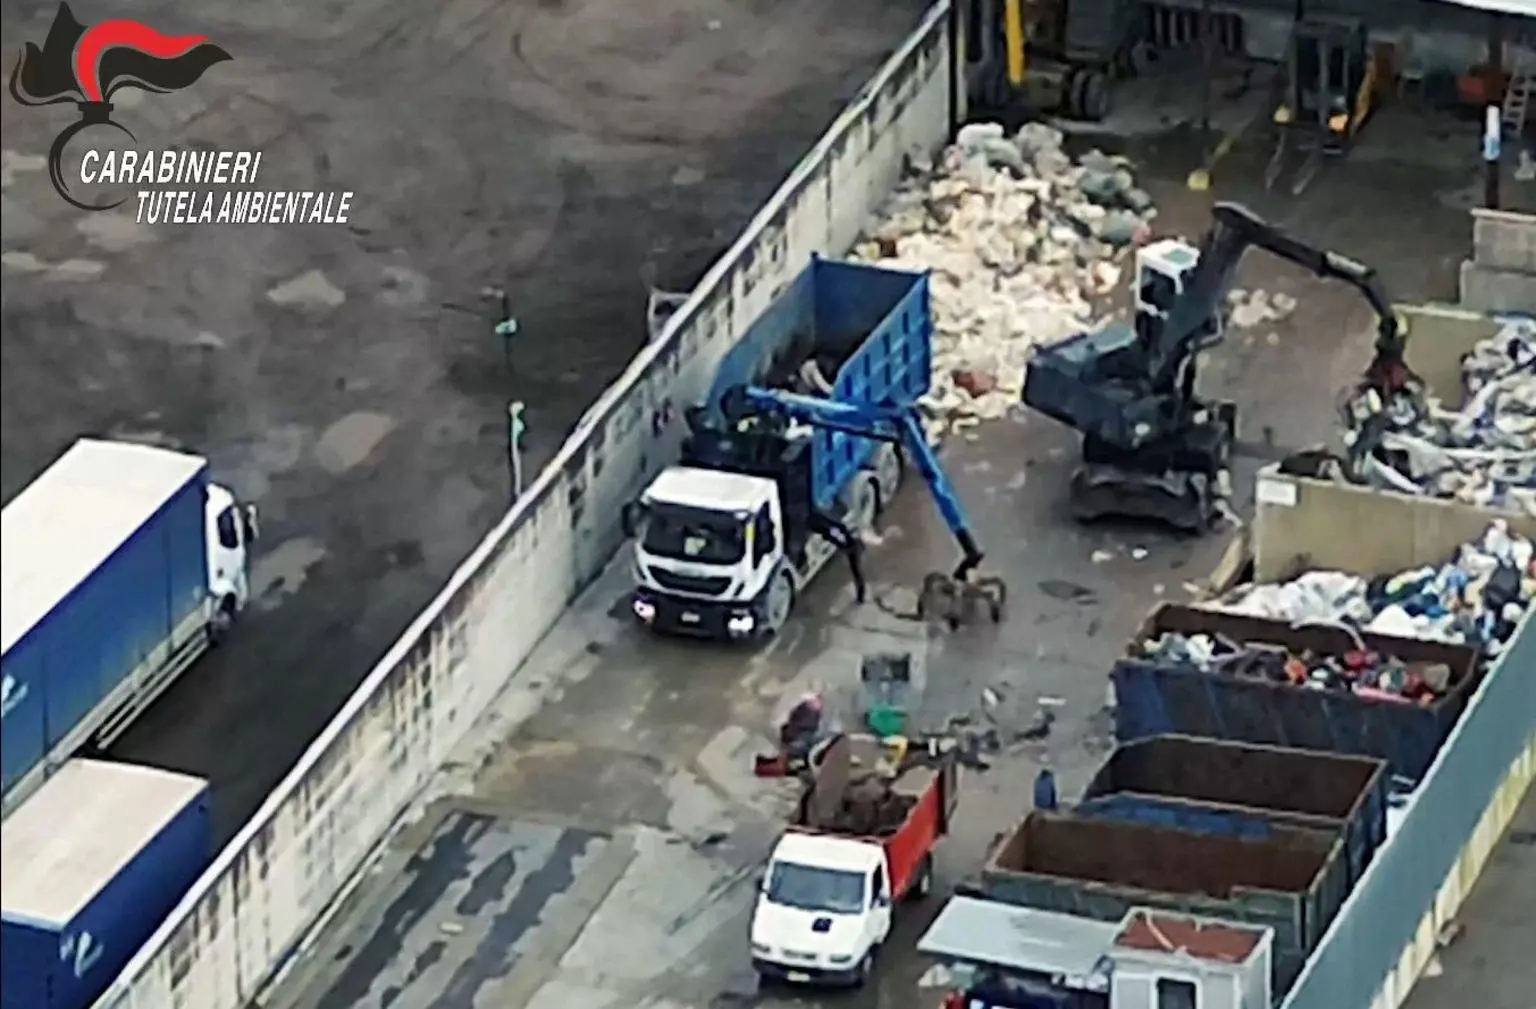 Smaltimento dei rifiuti, 12 arresti in Campania: sequestrate anche due aziende del settore industriale